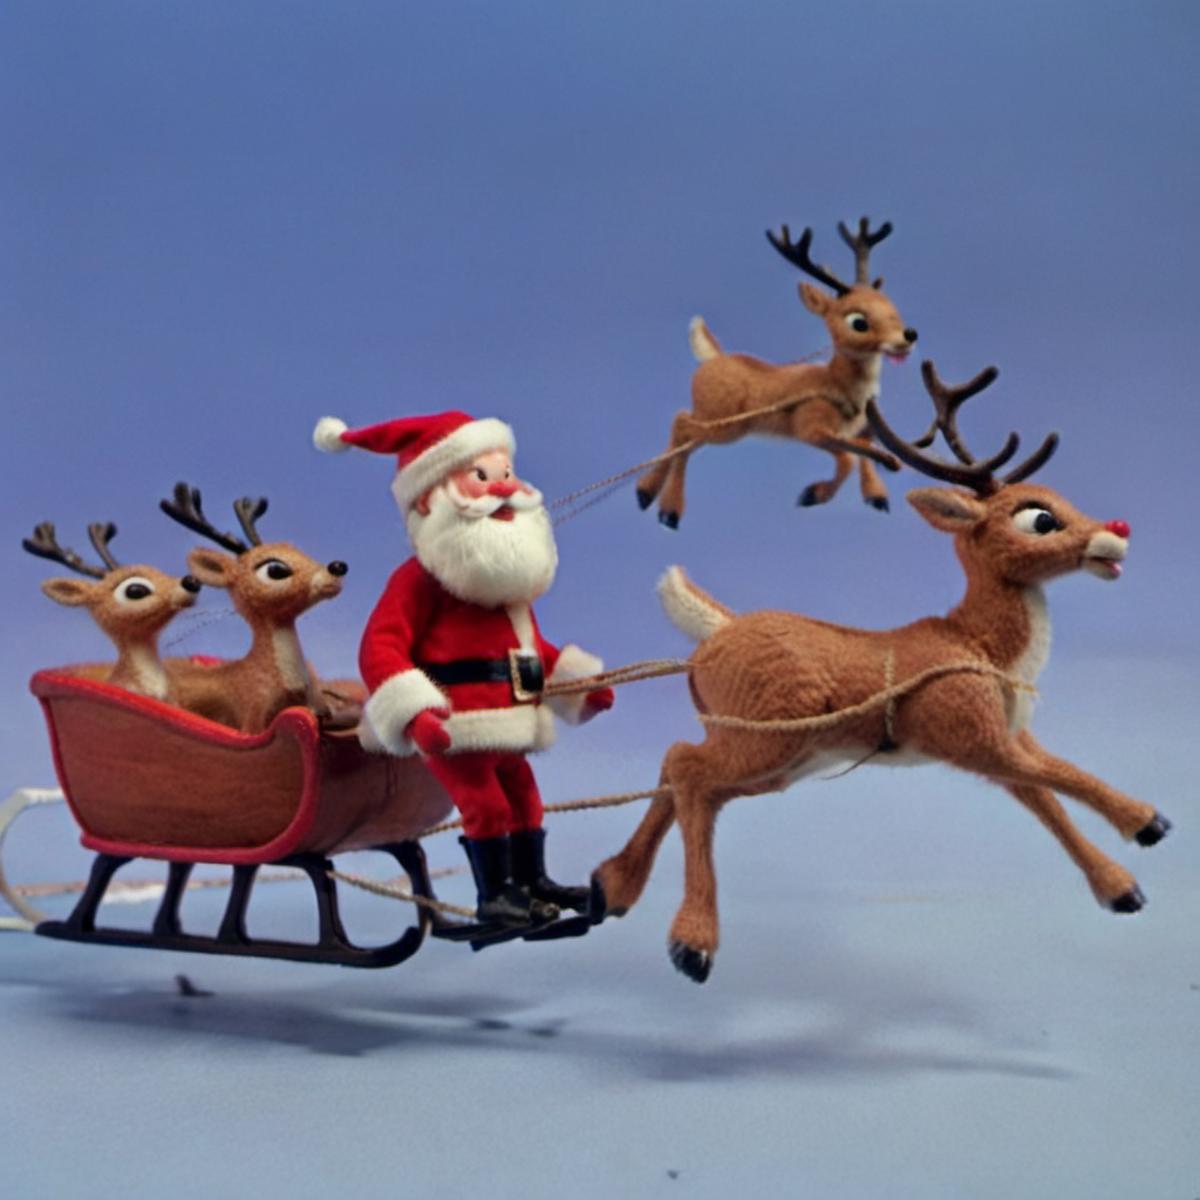 KK | Rudolph the Red Nosed Reindeer Film Style SDXL image by kylekennedykk